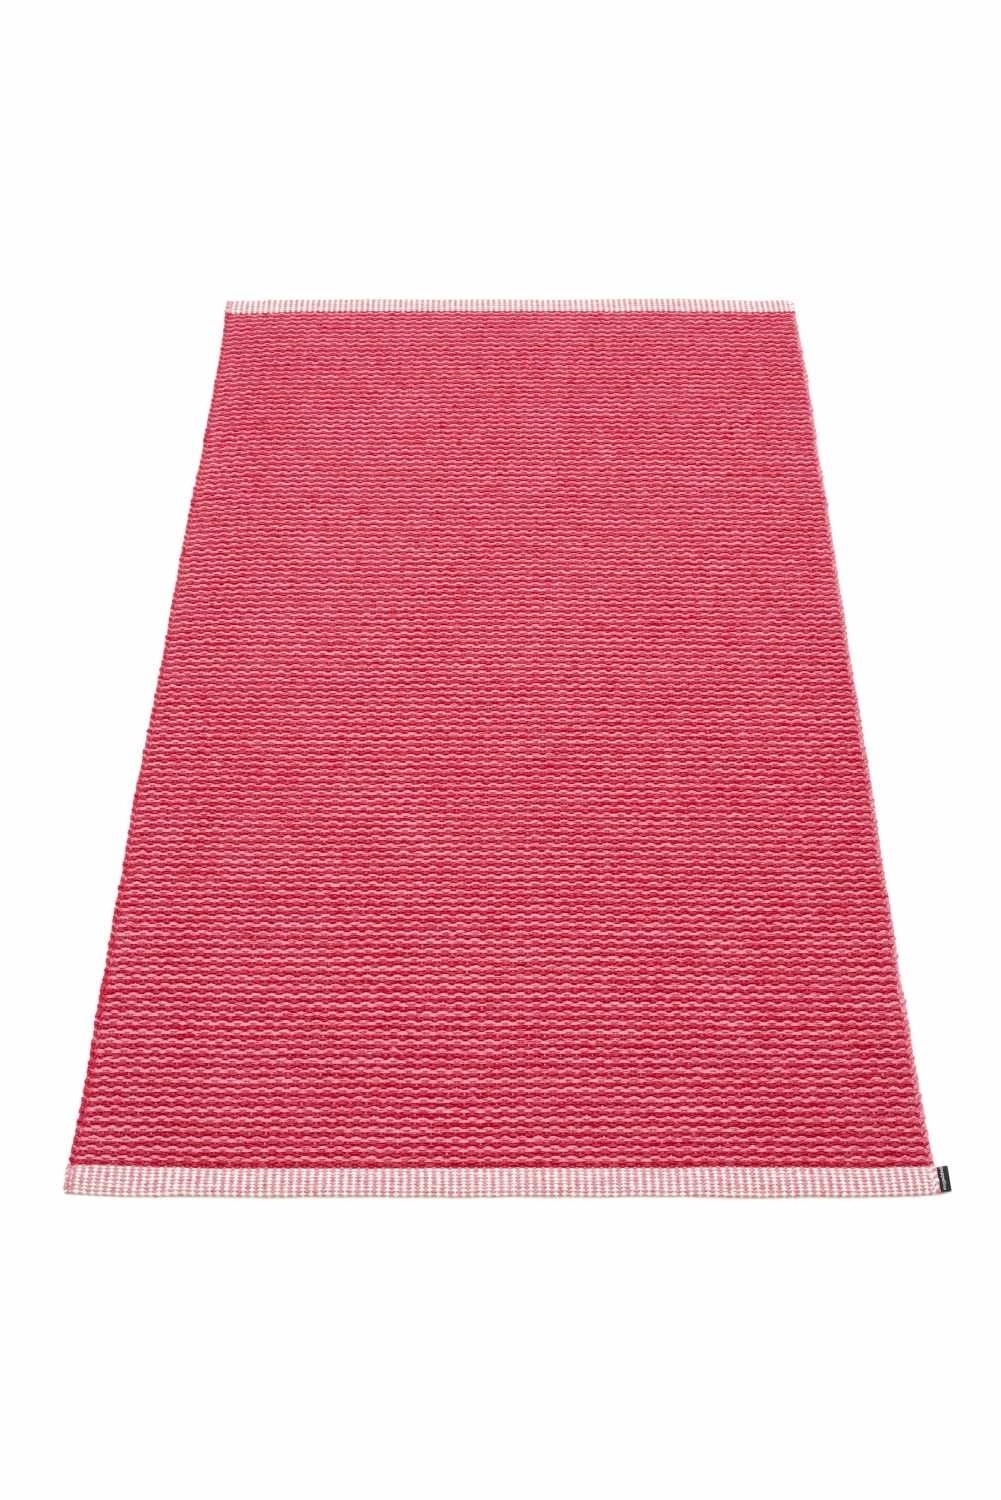 Mono Teppich Pink